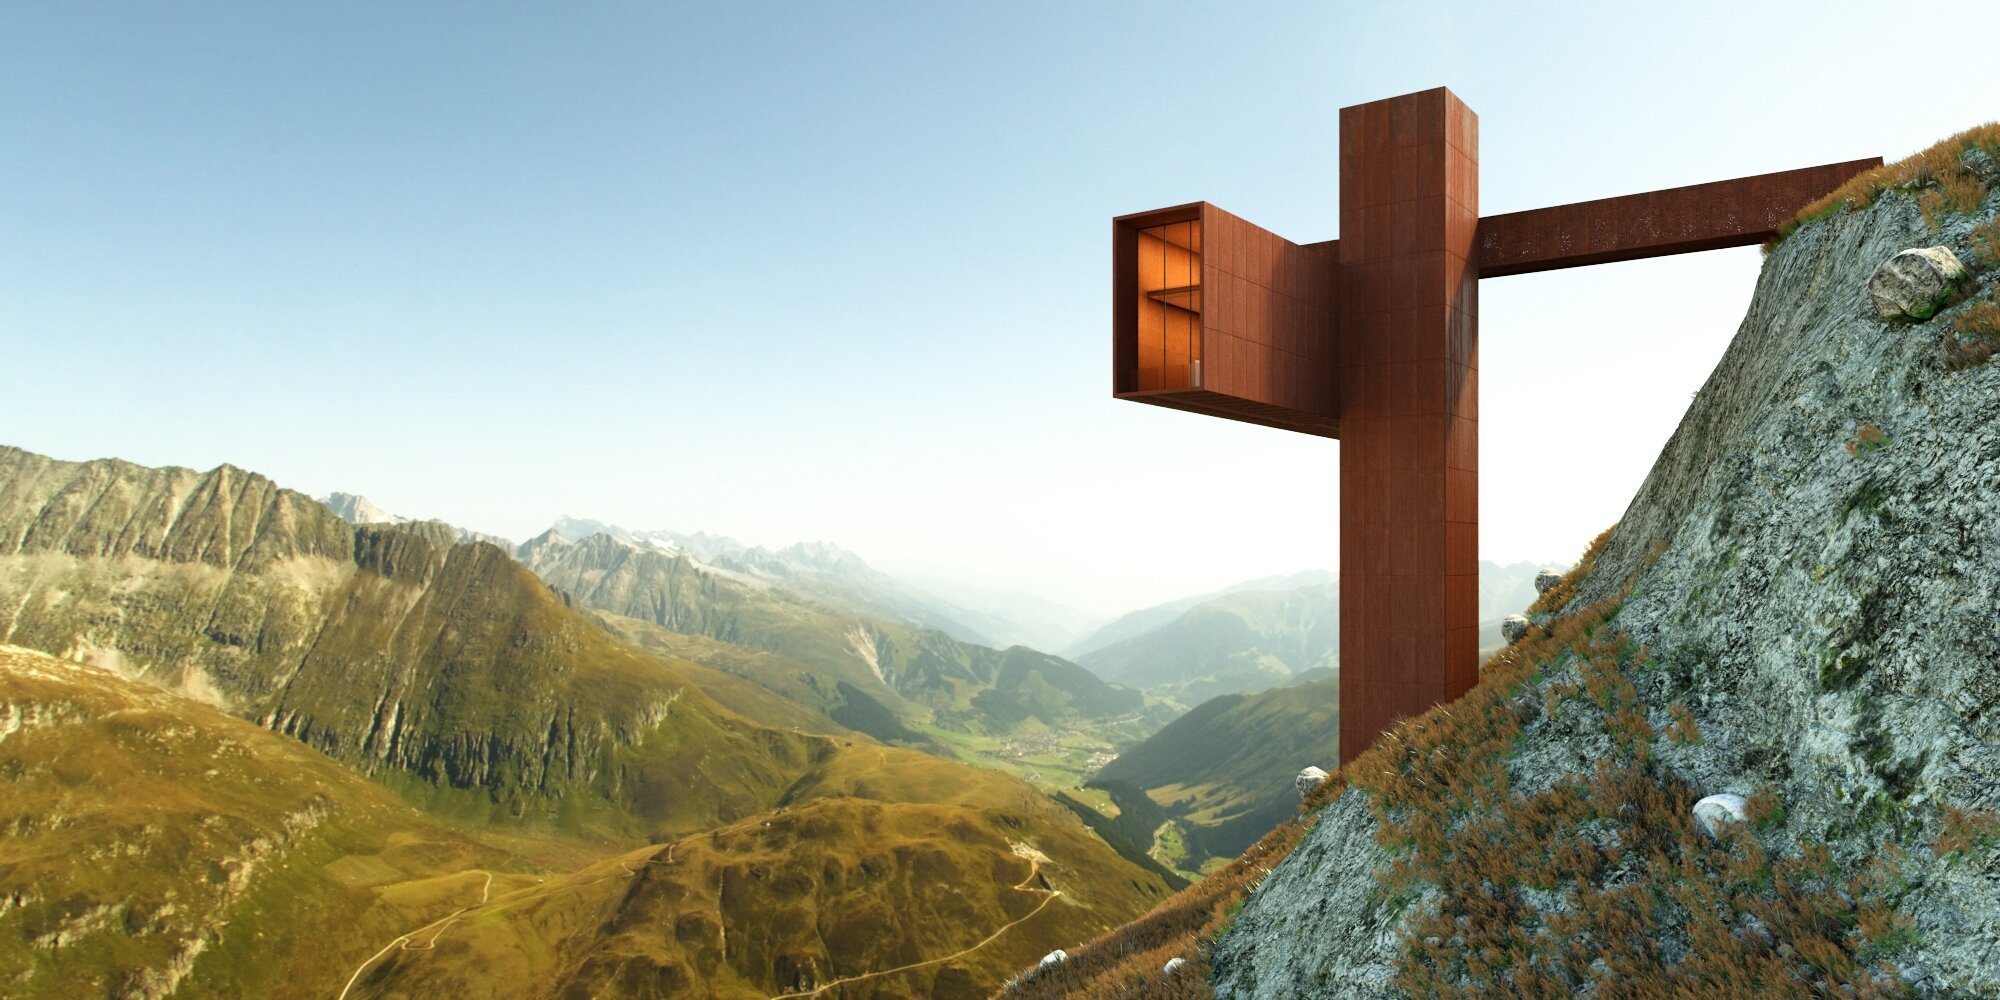 proyecto xyz house de John Beckmann en suiza